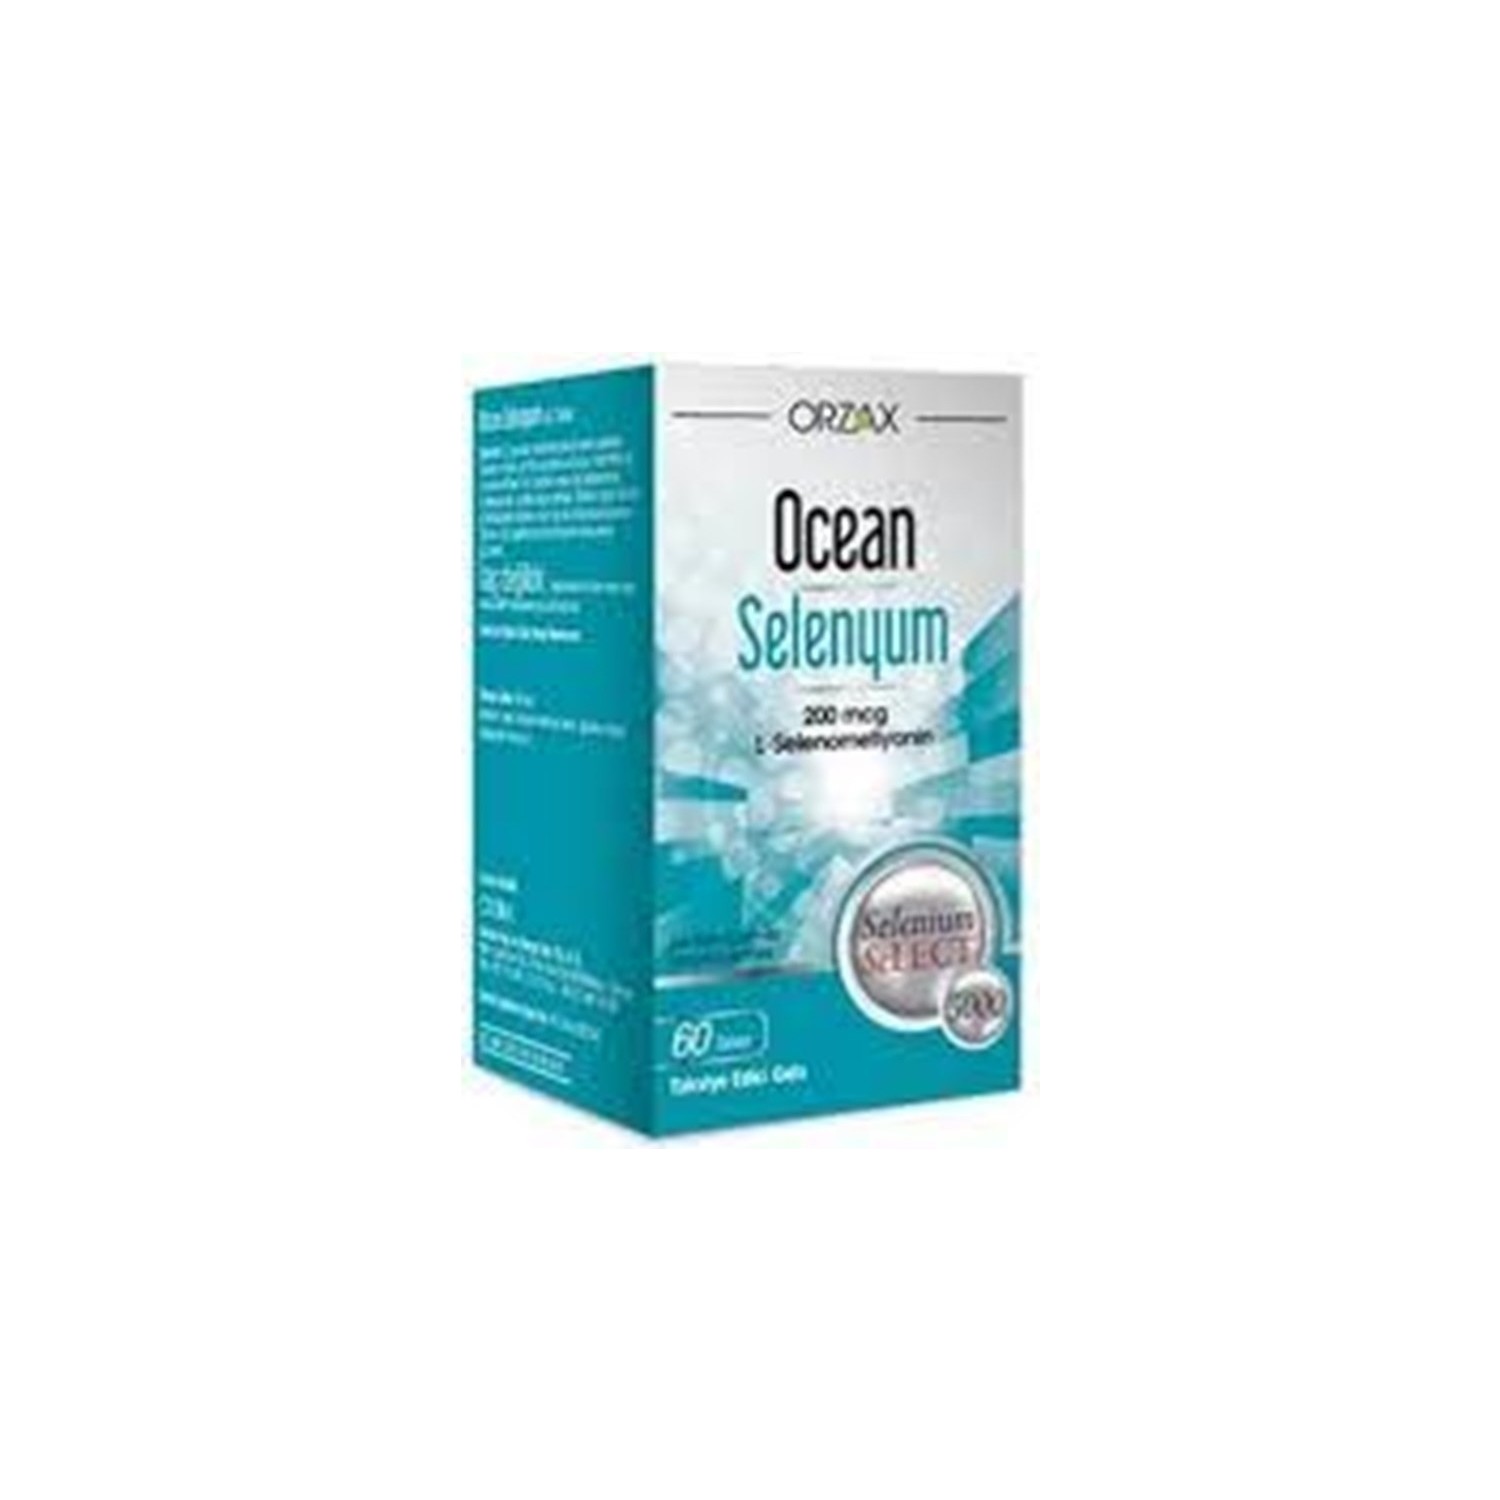 цена Селен Ocean 100 мкг, 30 таблеток